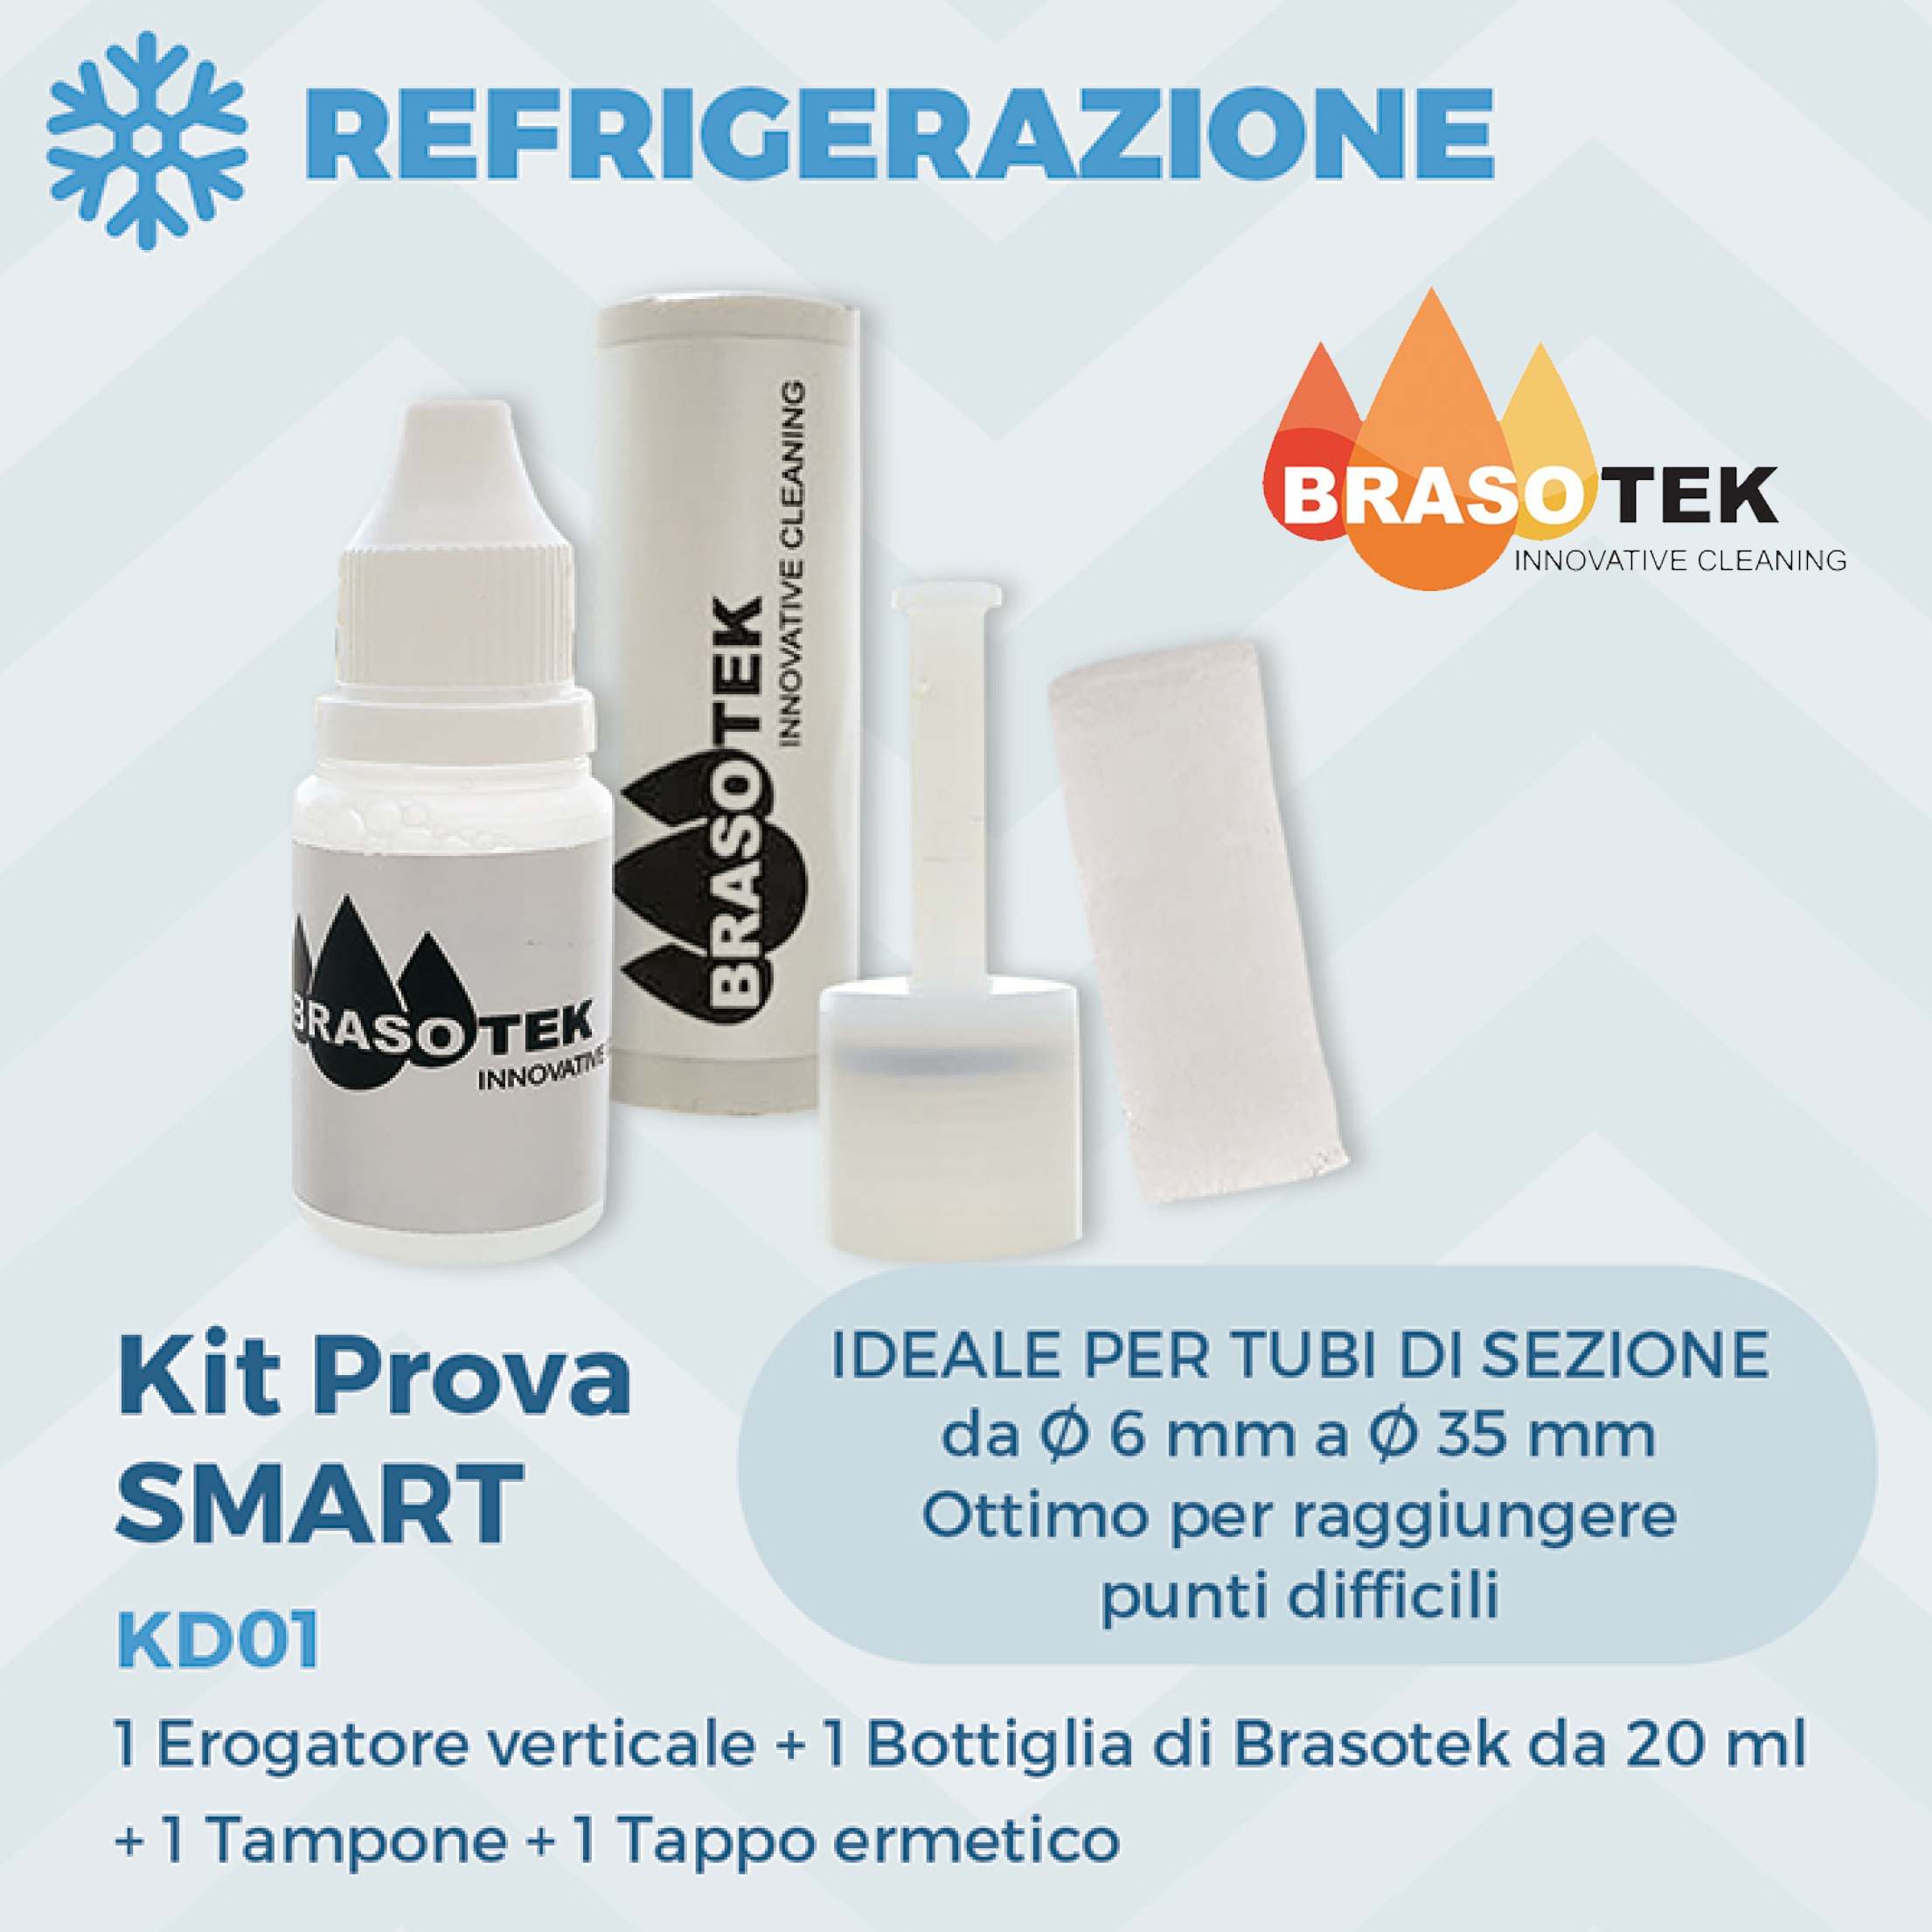 Brasotek - Kit Smart codice KD01 - Composto da 1 flacone da 20 ml, erogatore verticale, tampone, tappo ermetico - adatto per tubi diametro da 6 a 35 mm.